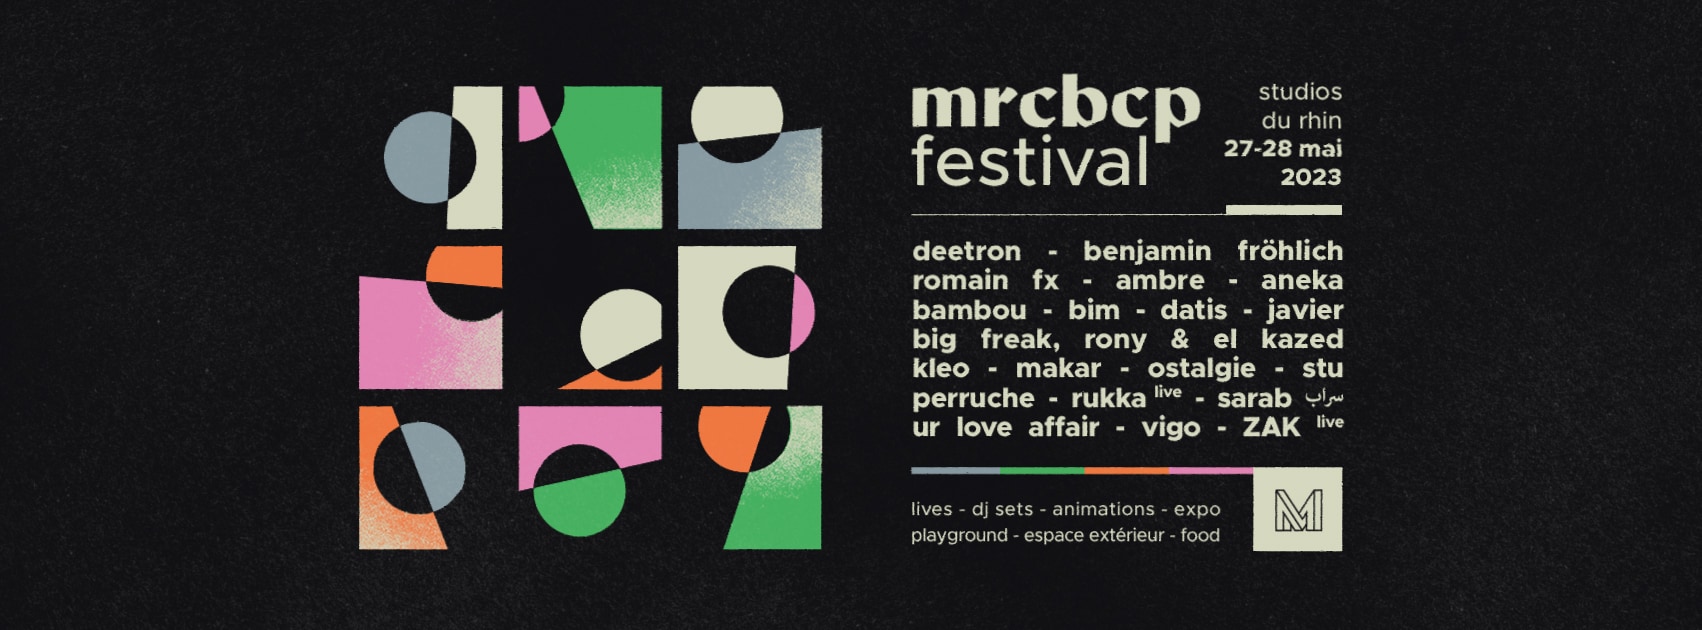 MRCBCP x Festival 27 & 28 Mai 2023